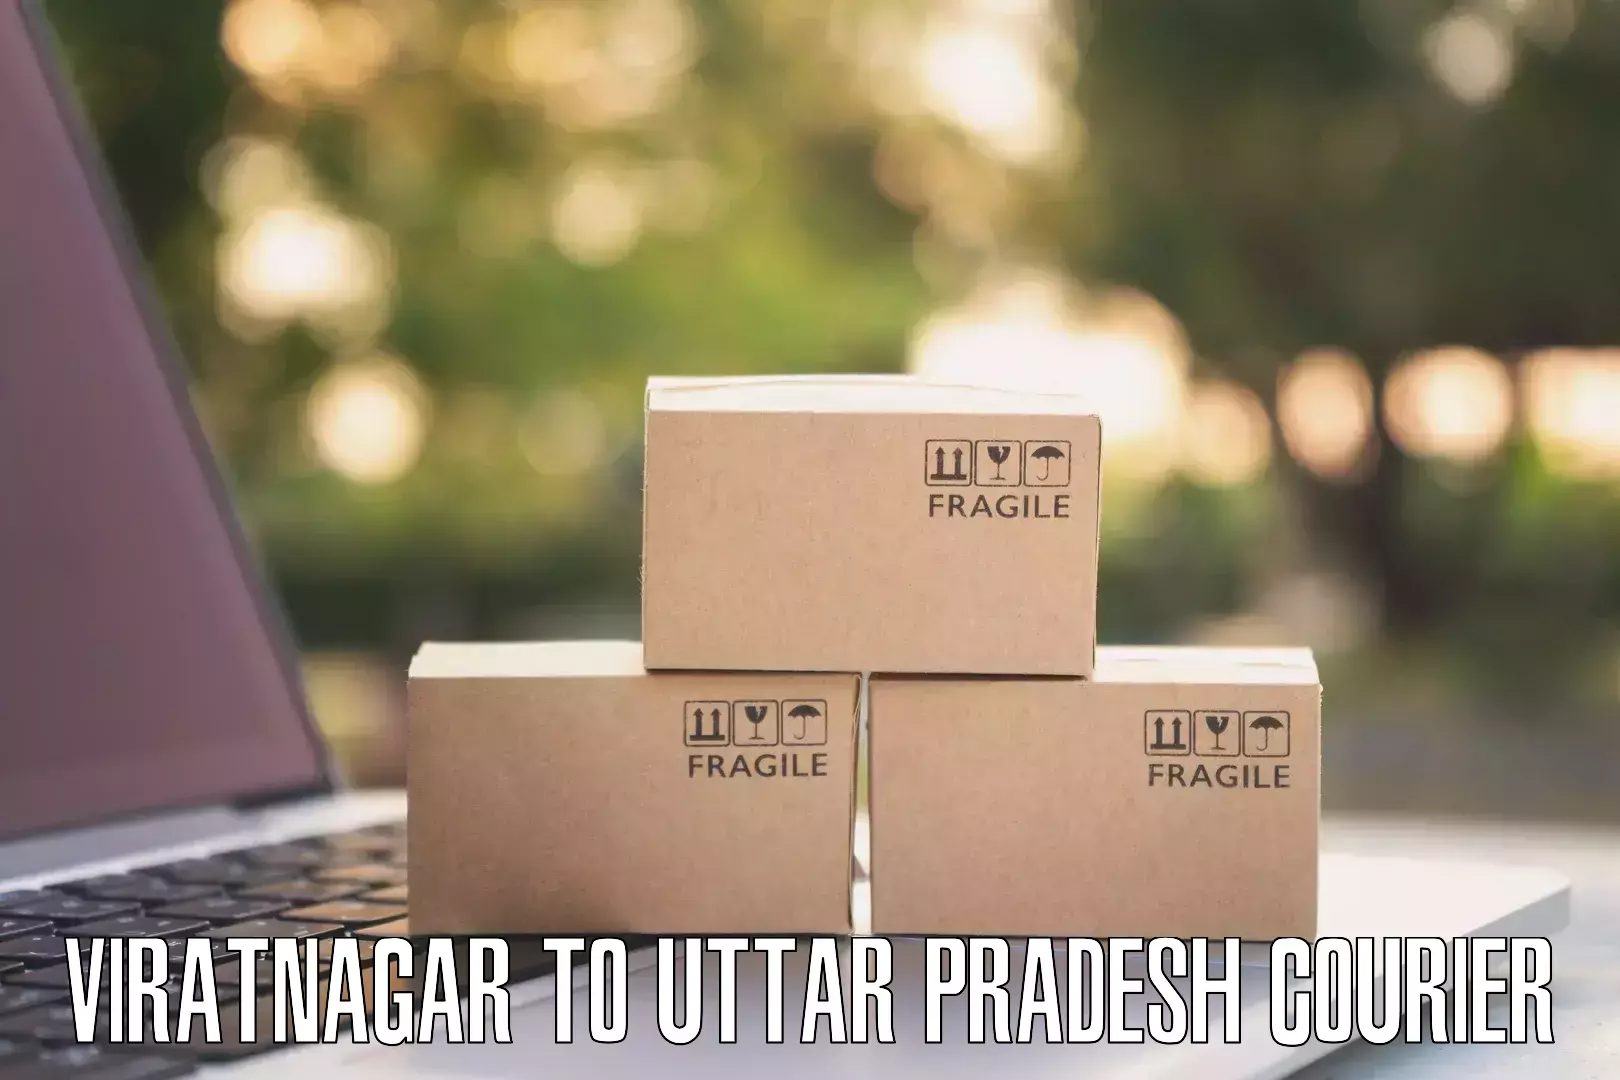 Sustainable courier practices Viratnagar to Uttar Pradesh